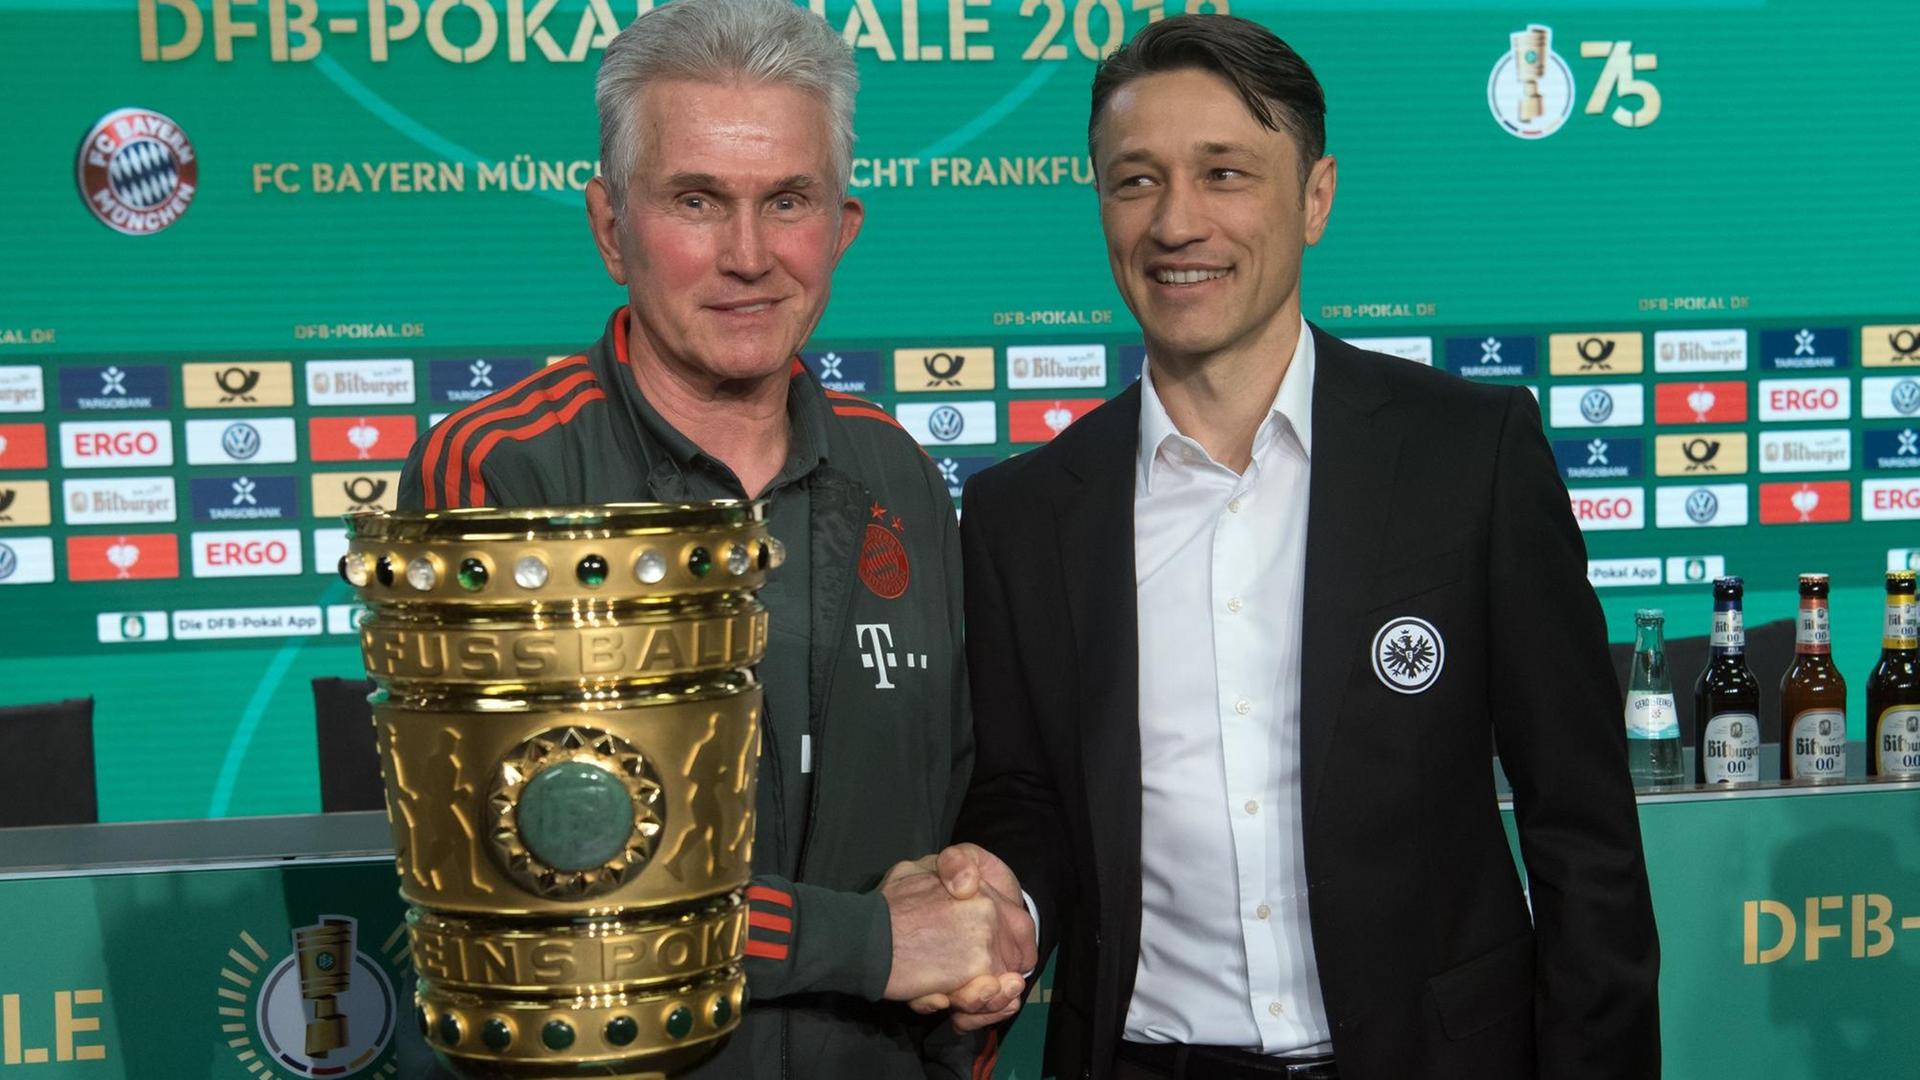 Jupp Heynckes (l), Trainer des FC Bayern München, und Niko Kovac, Trainer von Eintracht Frankfurt, stehen nach der Pressekonferenz zum DFB-Pokalfinale zwischen dem FC Bayern München und Eintracht Frankfurt am 19.05.2018 hinter dem Pokal.